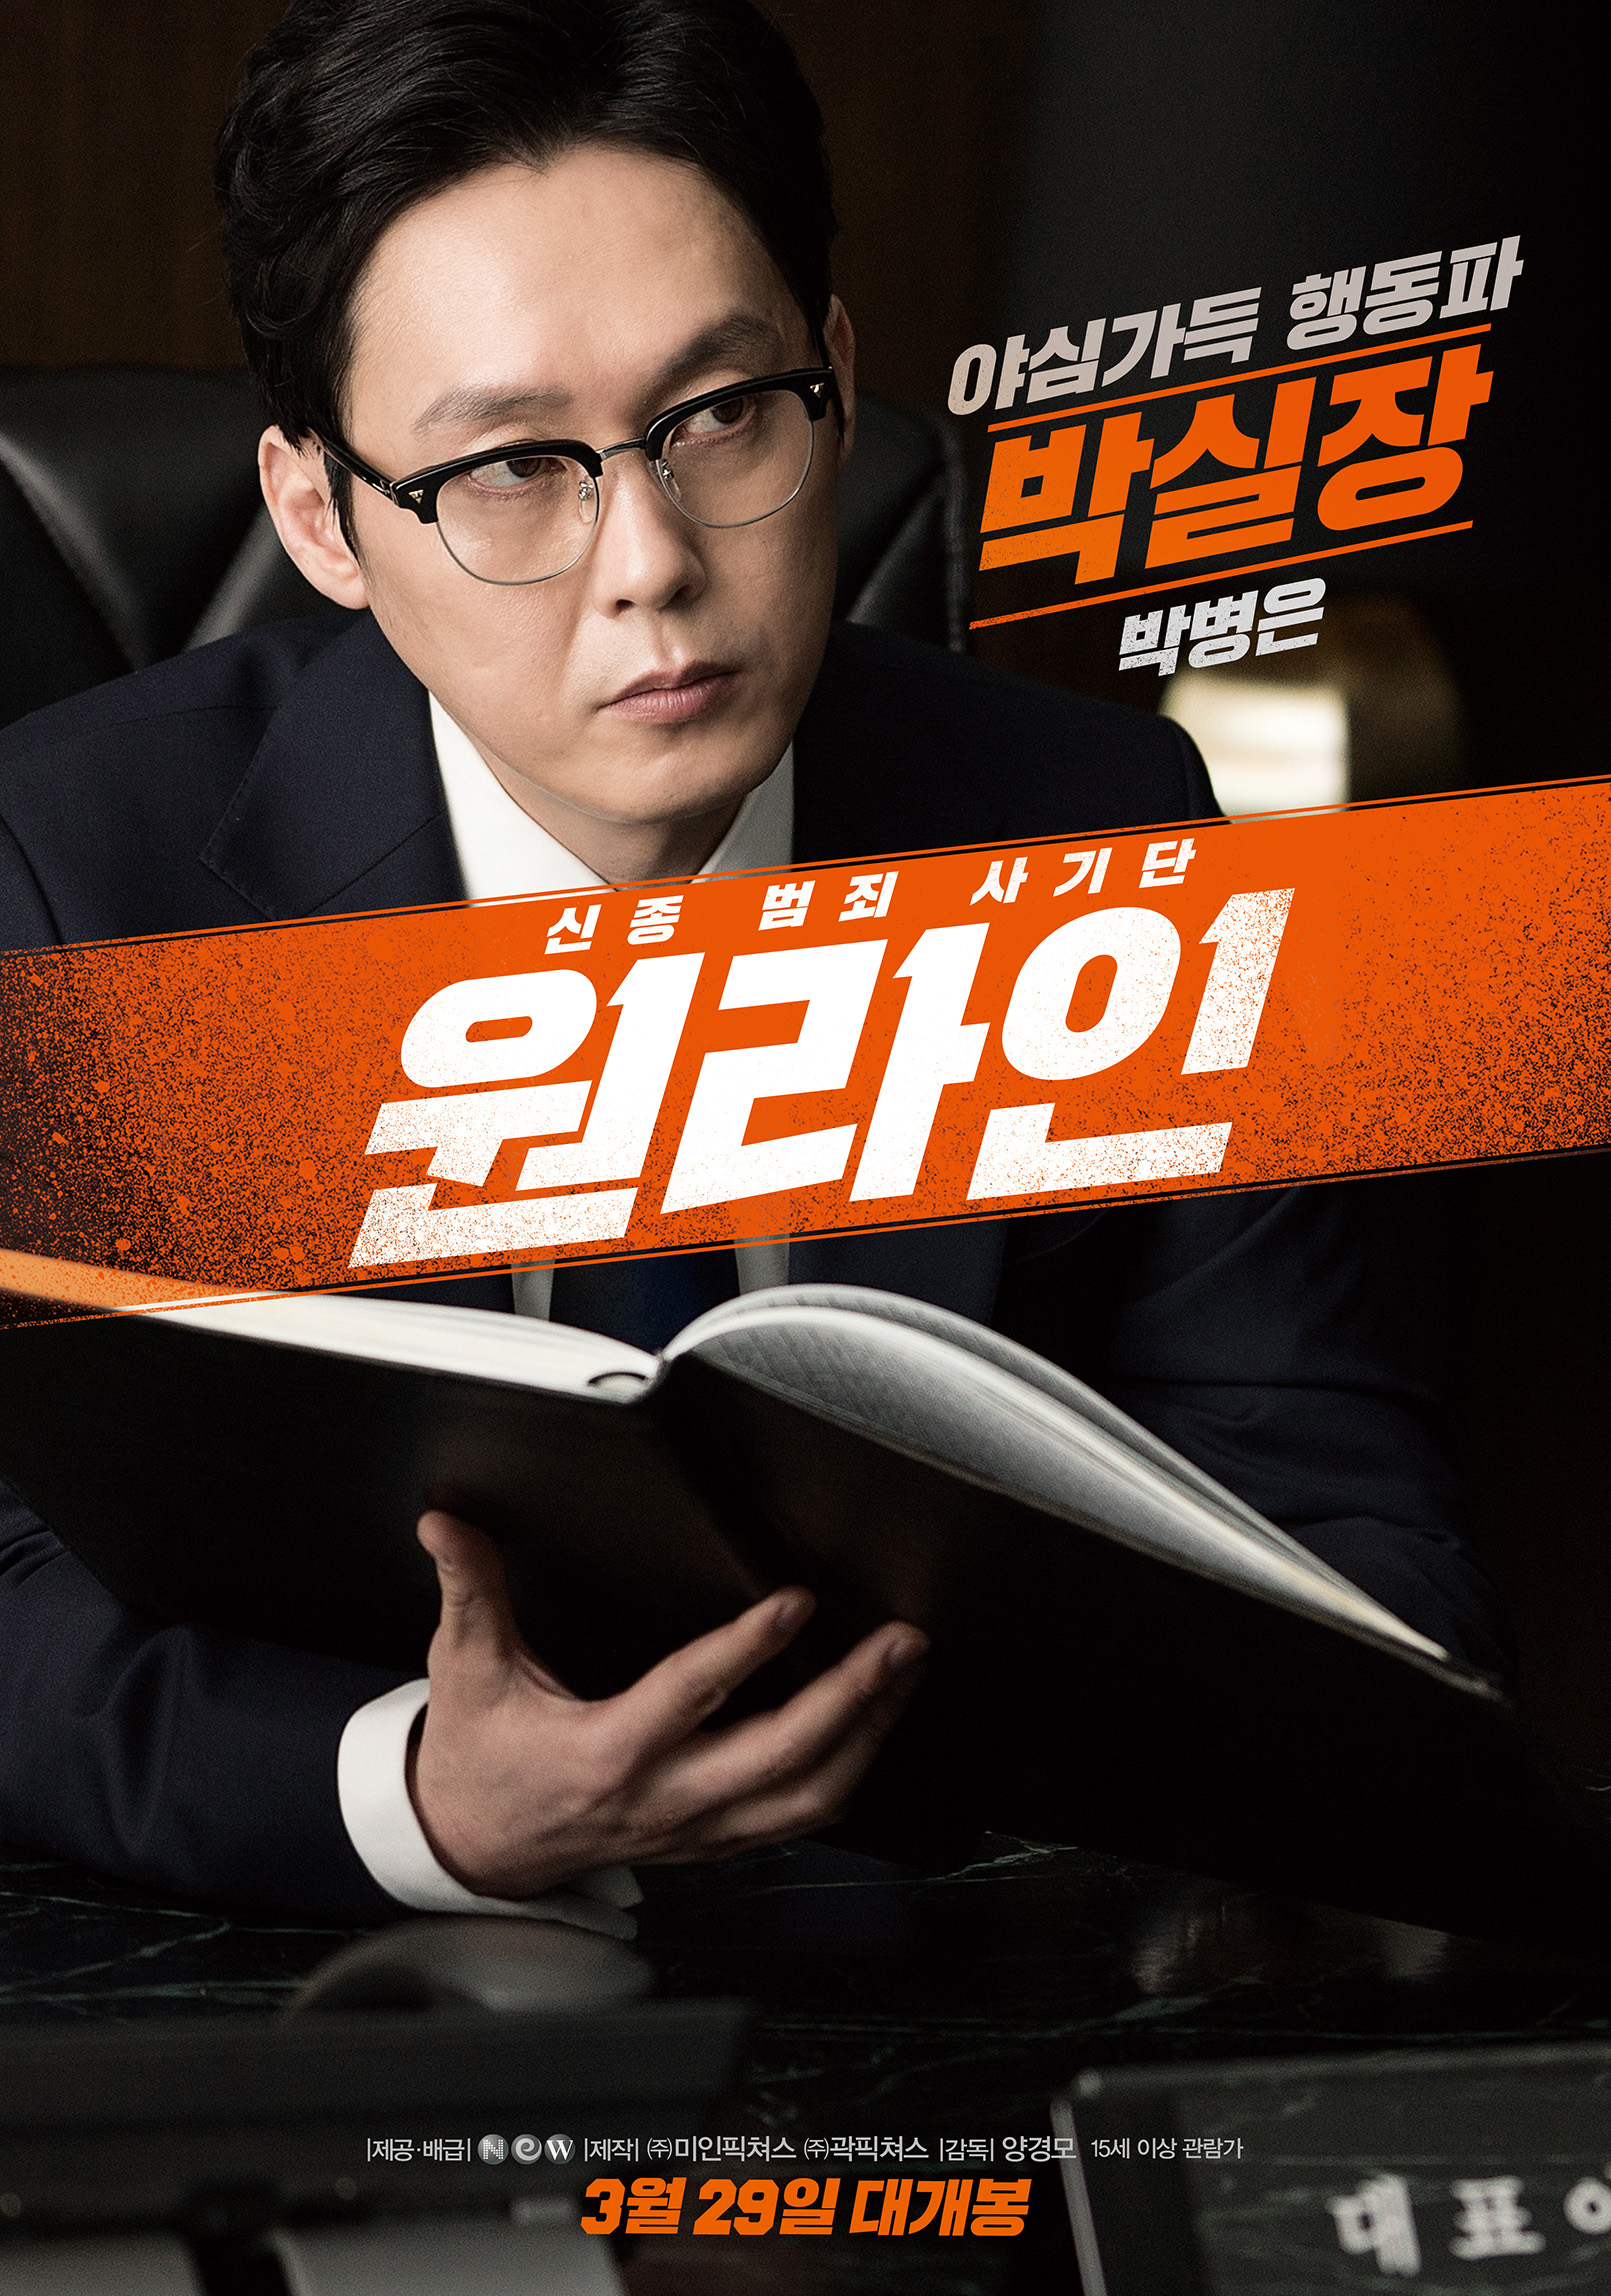 사진 : 영화 '원라인'의 박실장으로 열연한 배우 박병은 캐릭터 포스터 